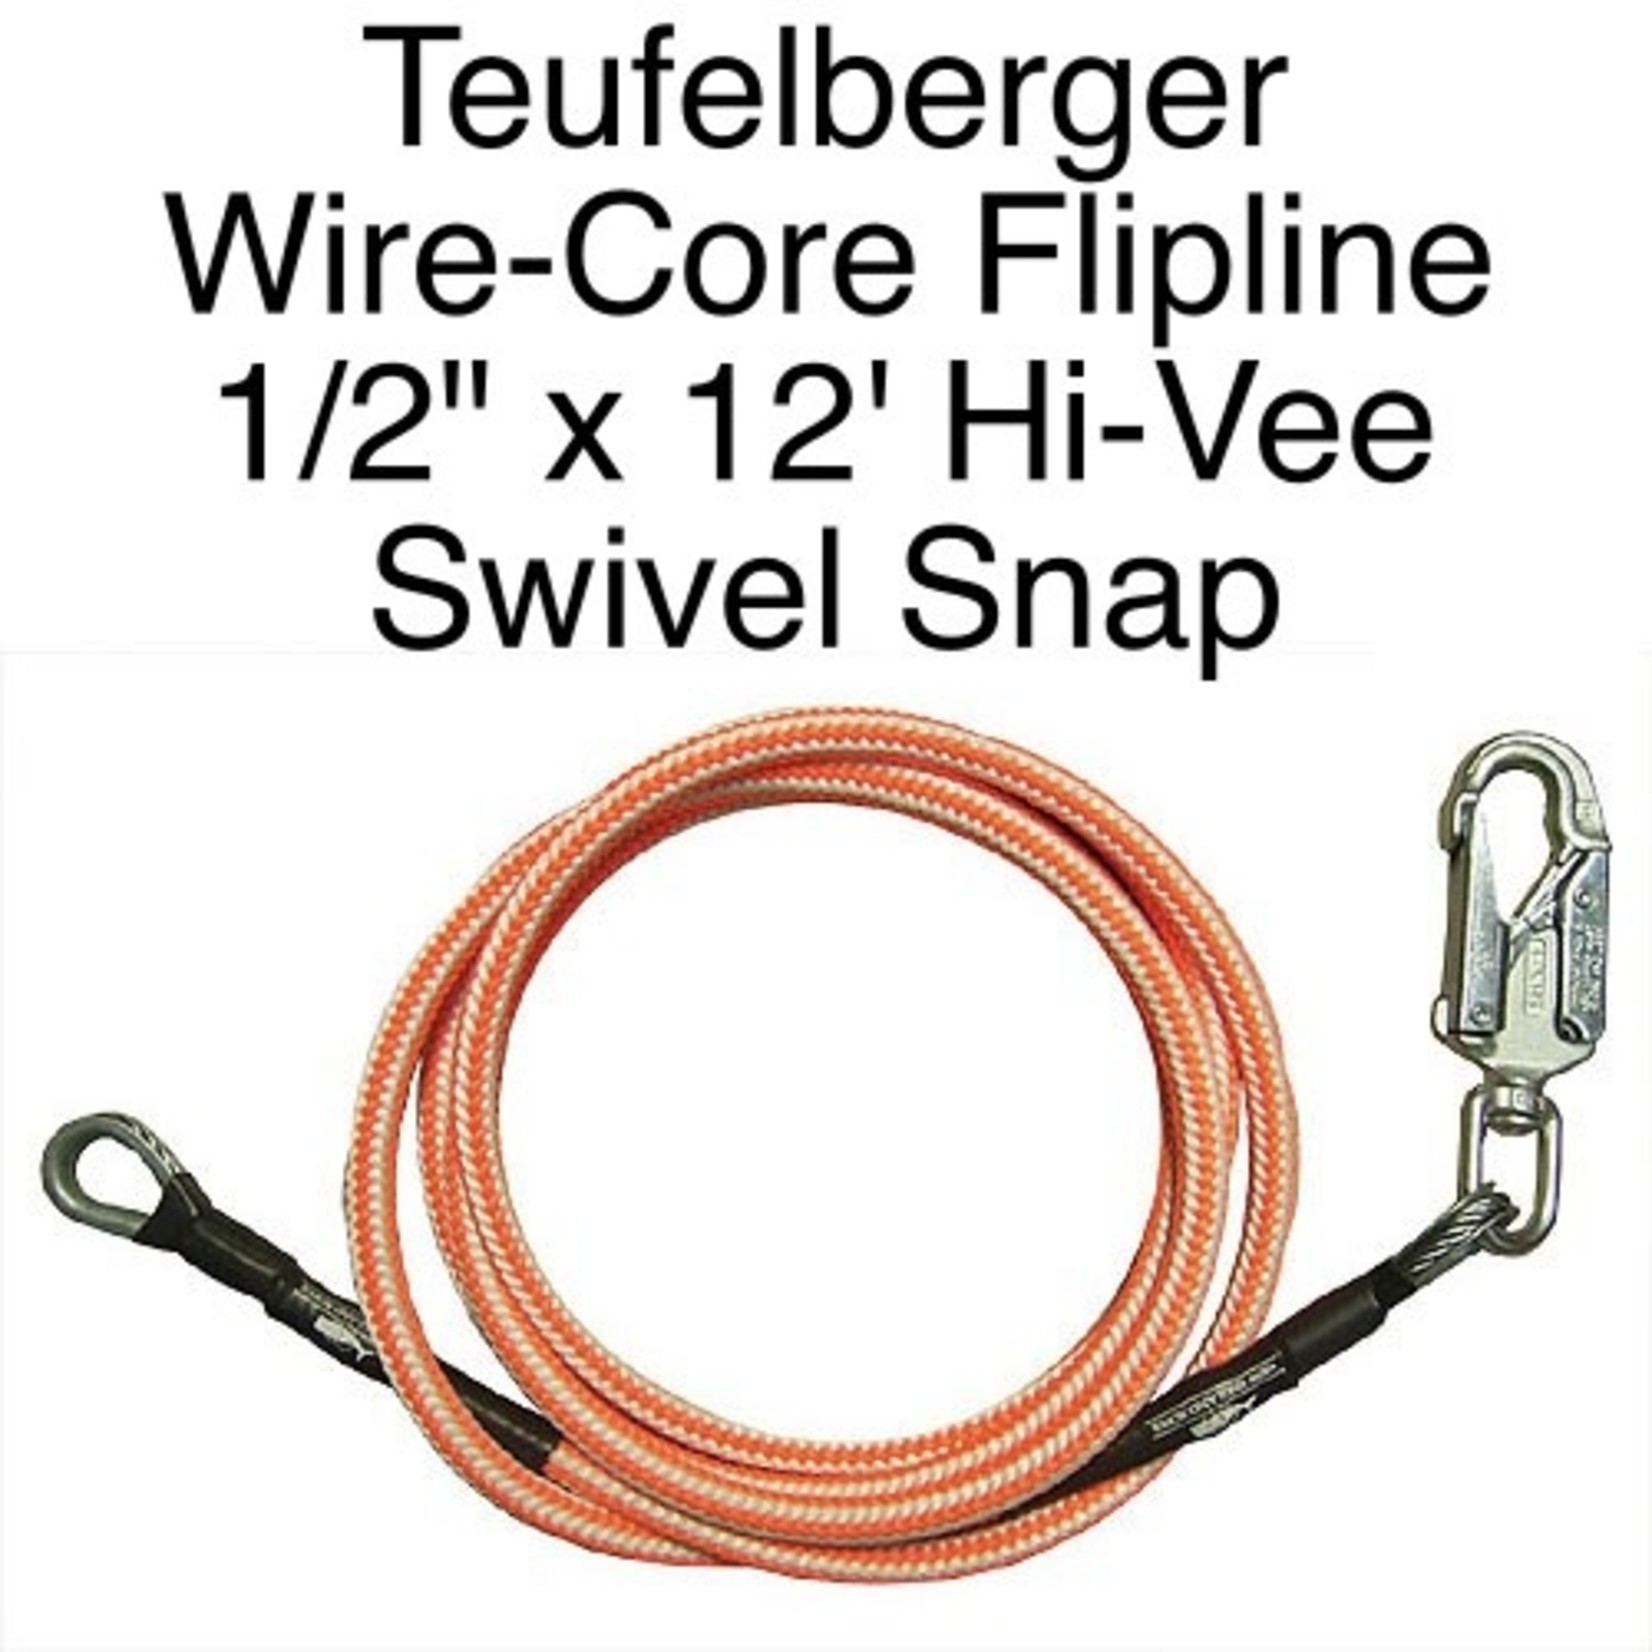 Teufelberger Flipline Hi-Vee 1/2in X 12ft With Swivel Snap